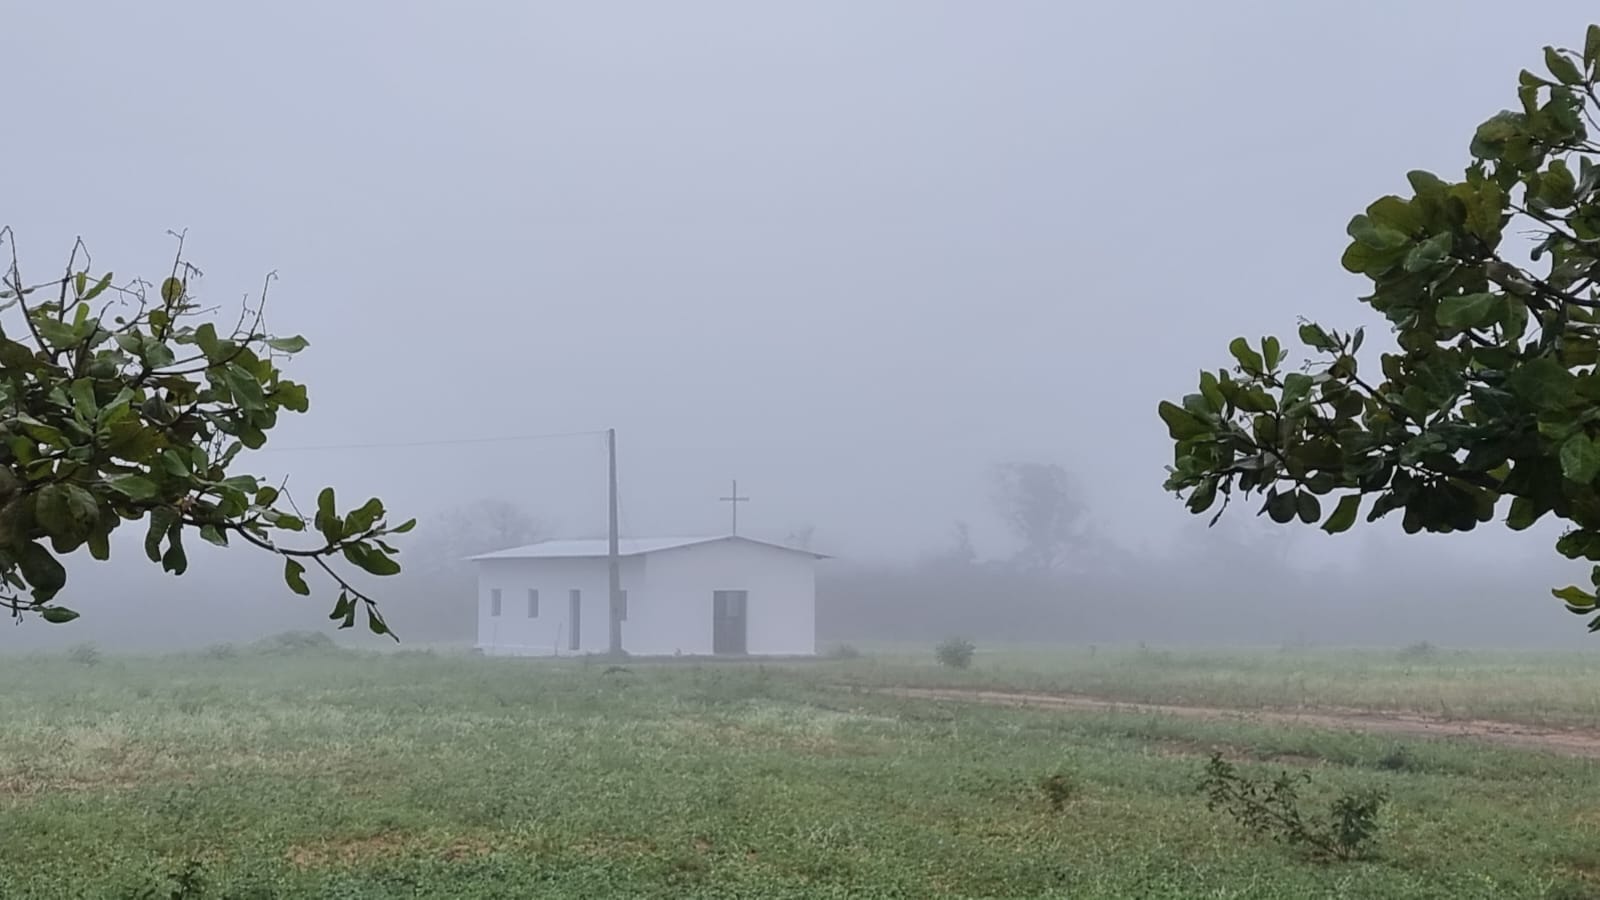 Capelinha coberta por neblina em Bom Jesus: metáfora para a brevidade da vida humana